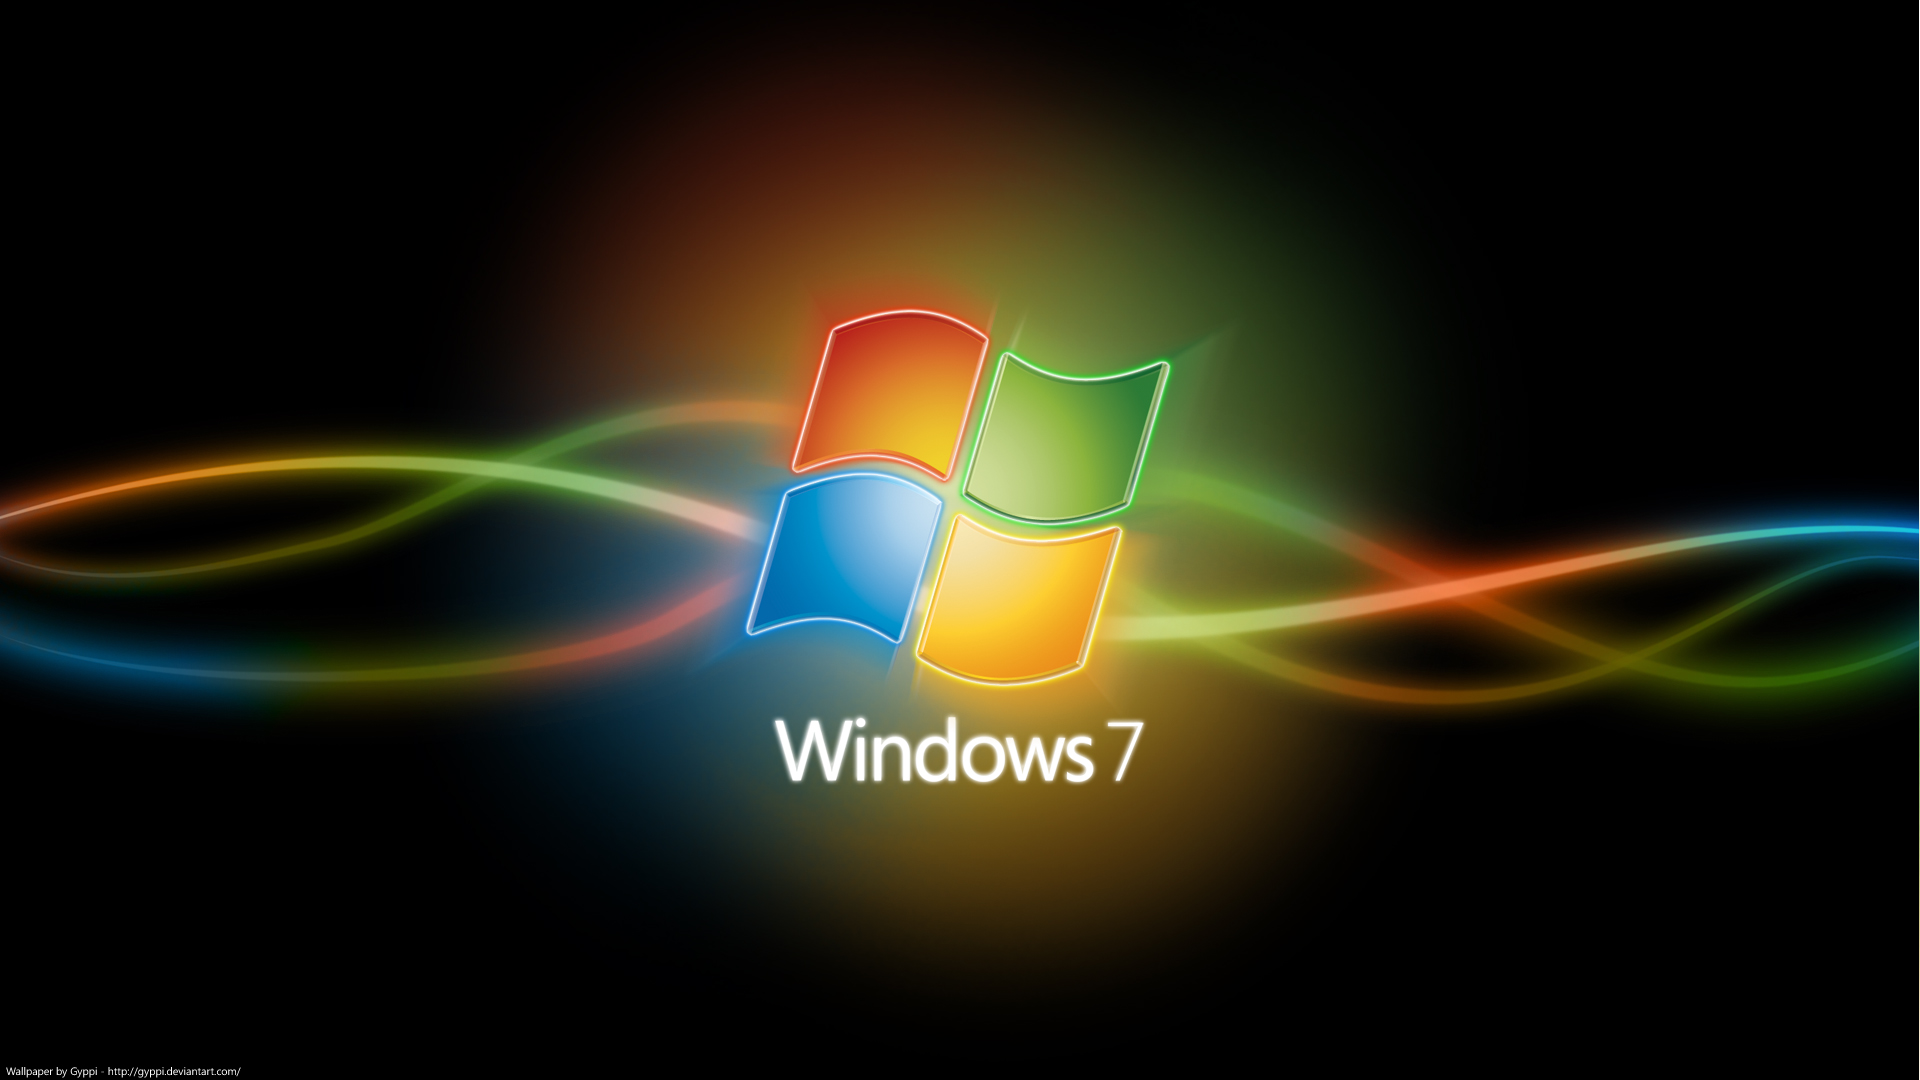 windows 7 wallpapers desktop win 7 background colors 1920x1080